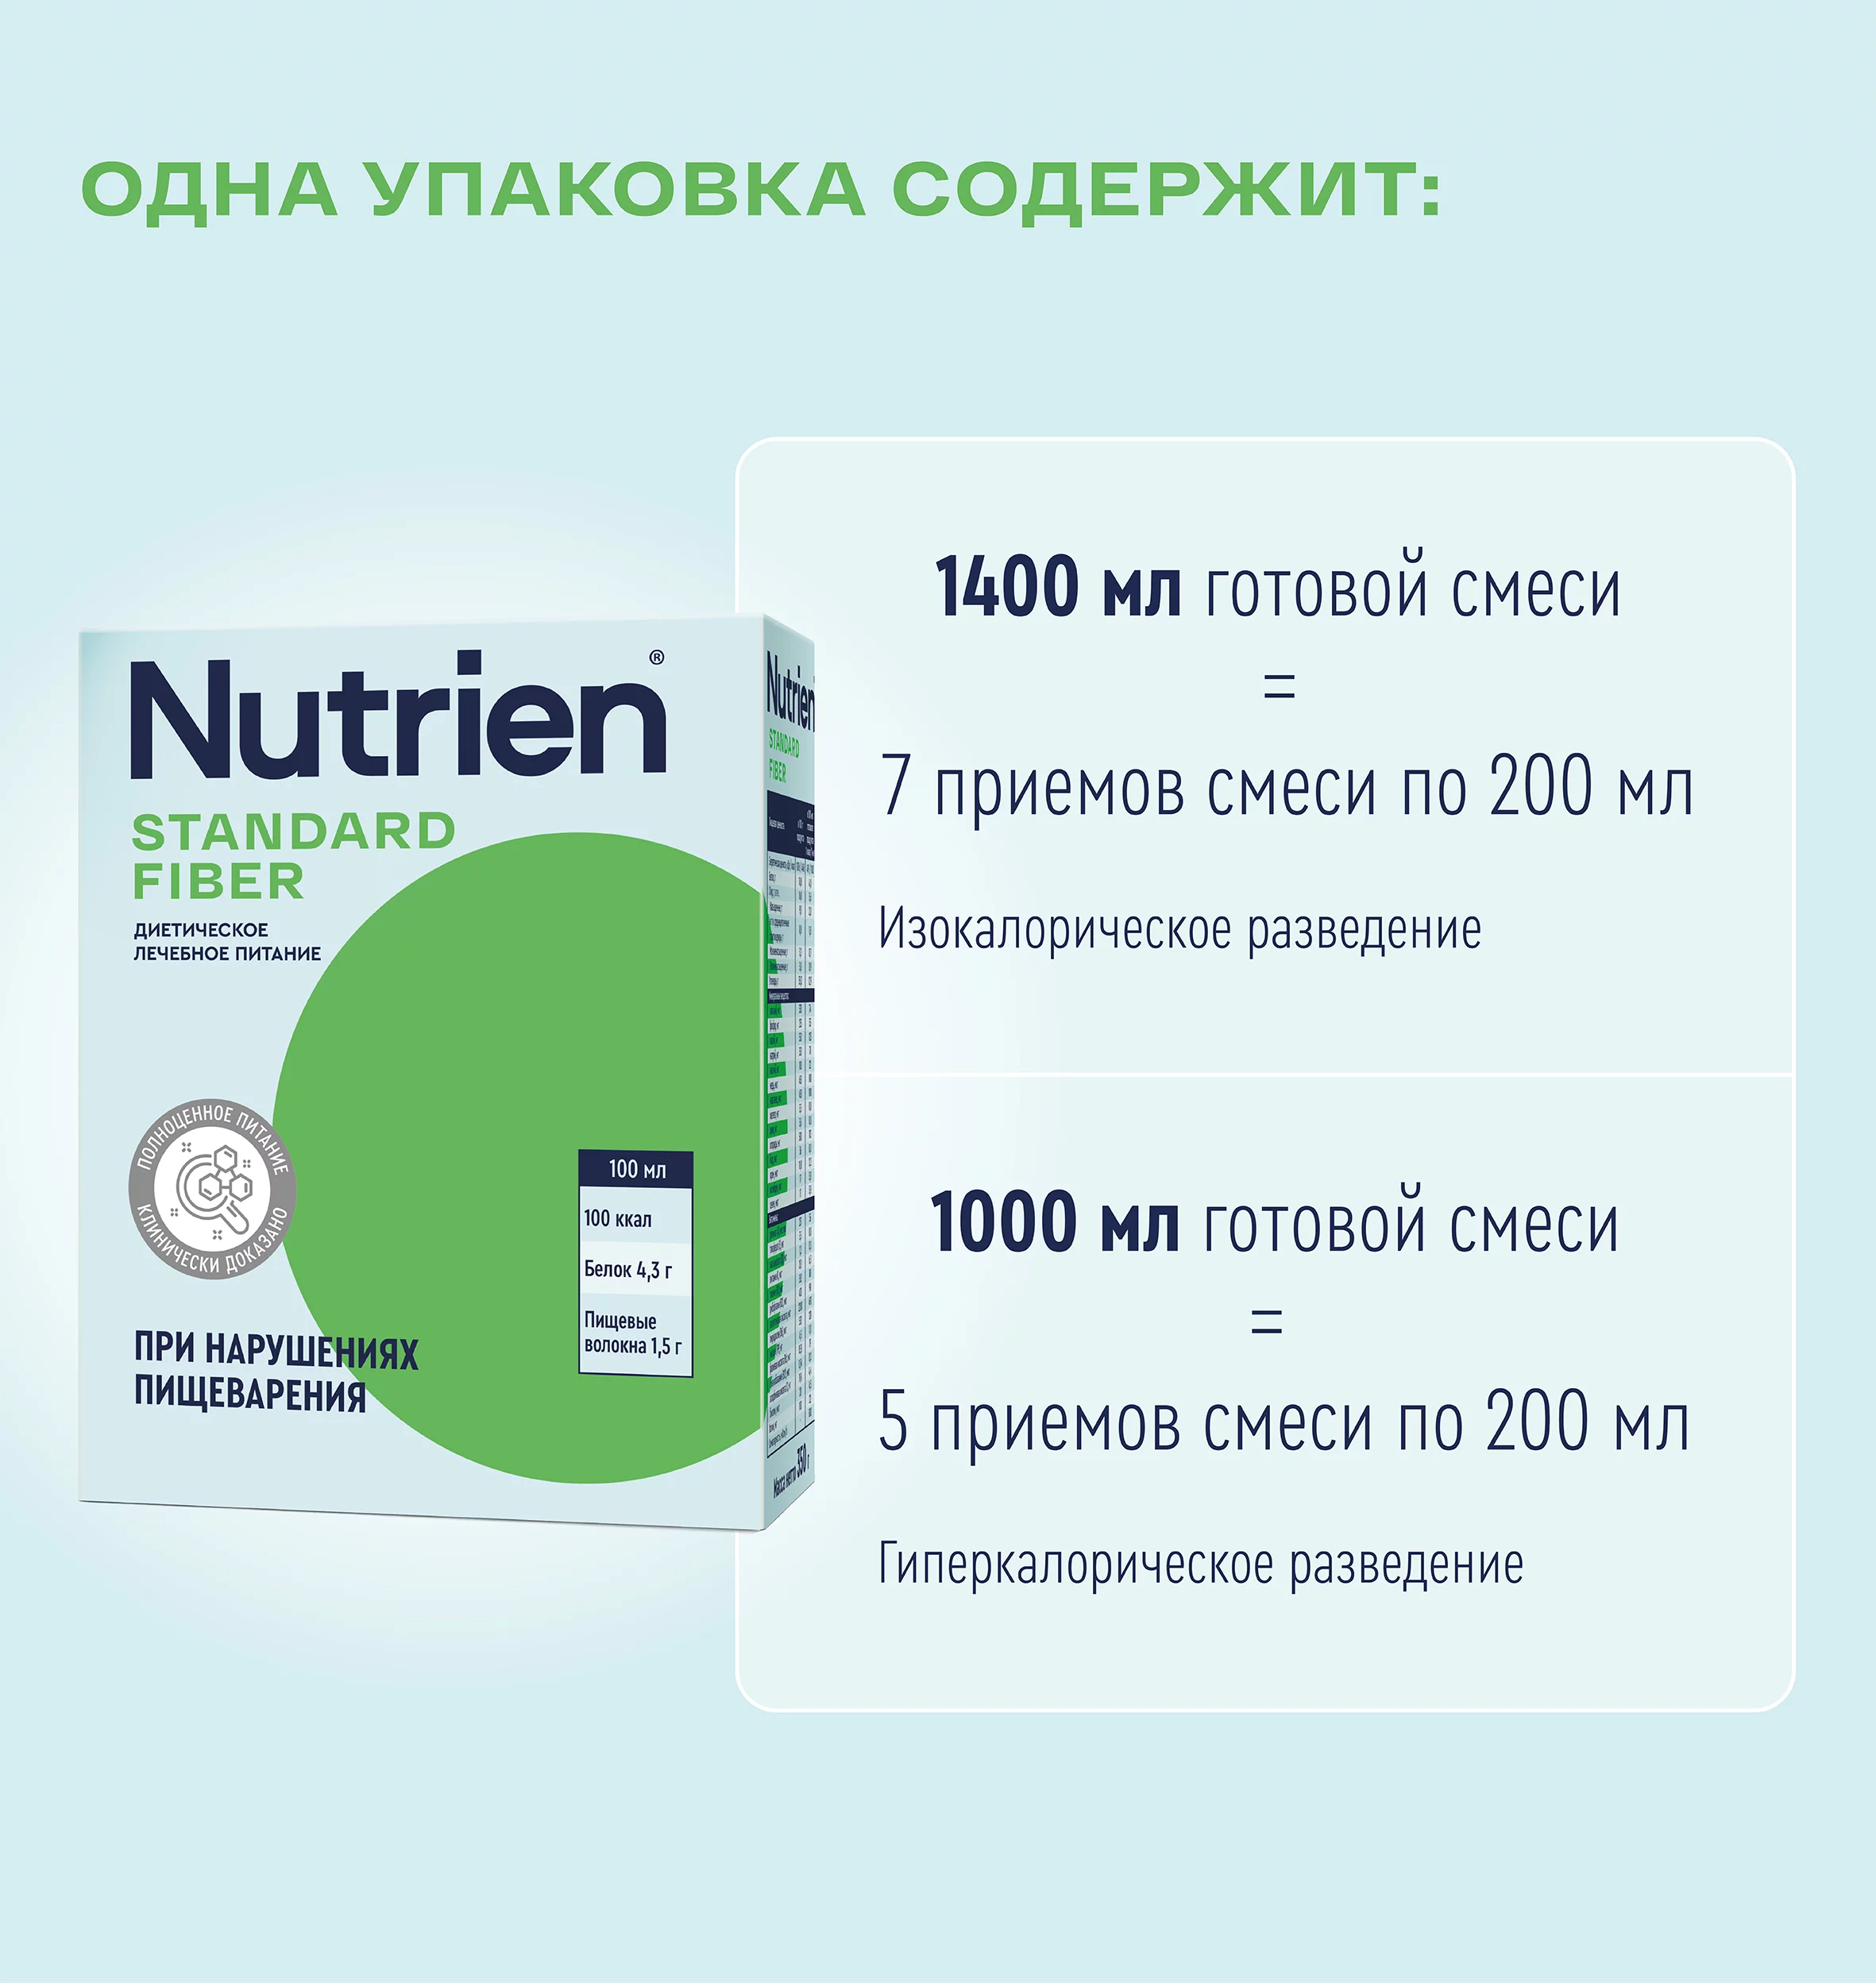 Nutrien Standard Fiber - 18